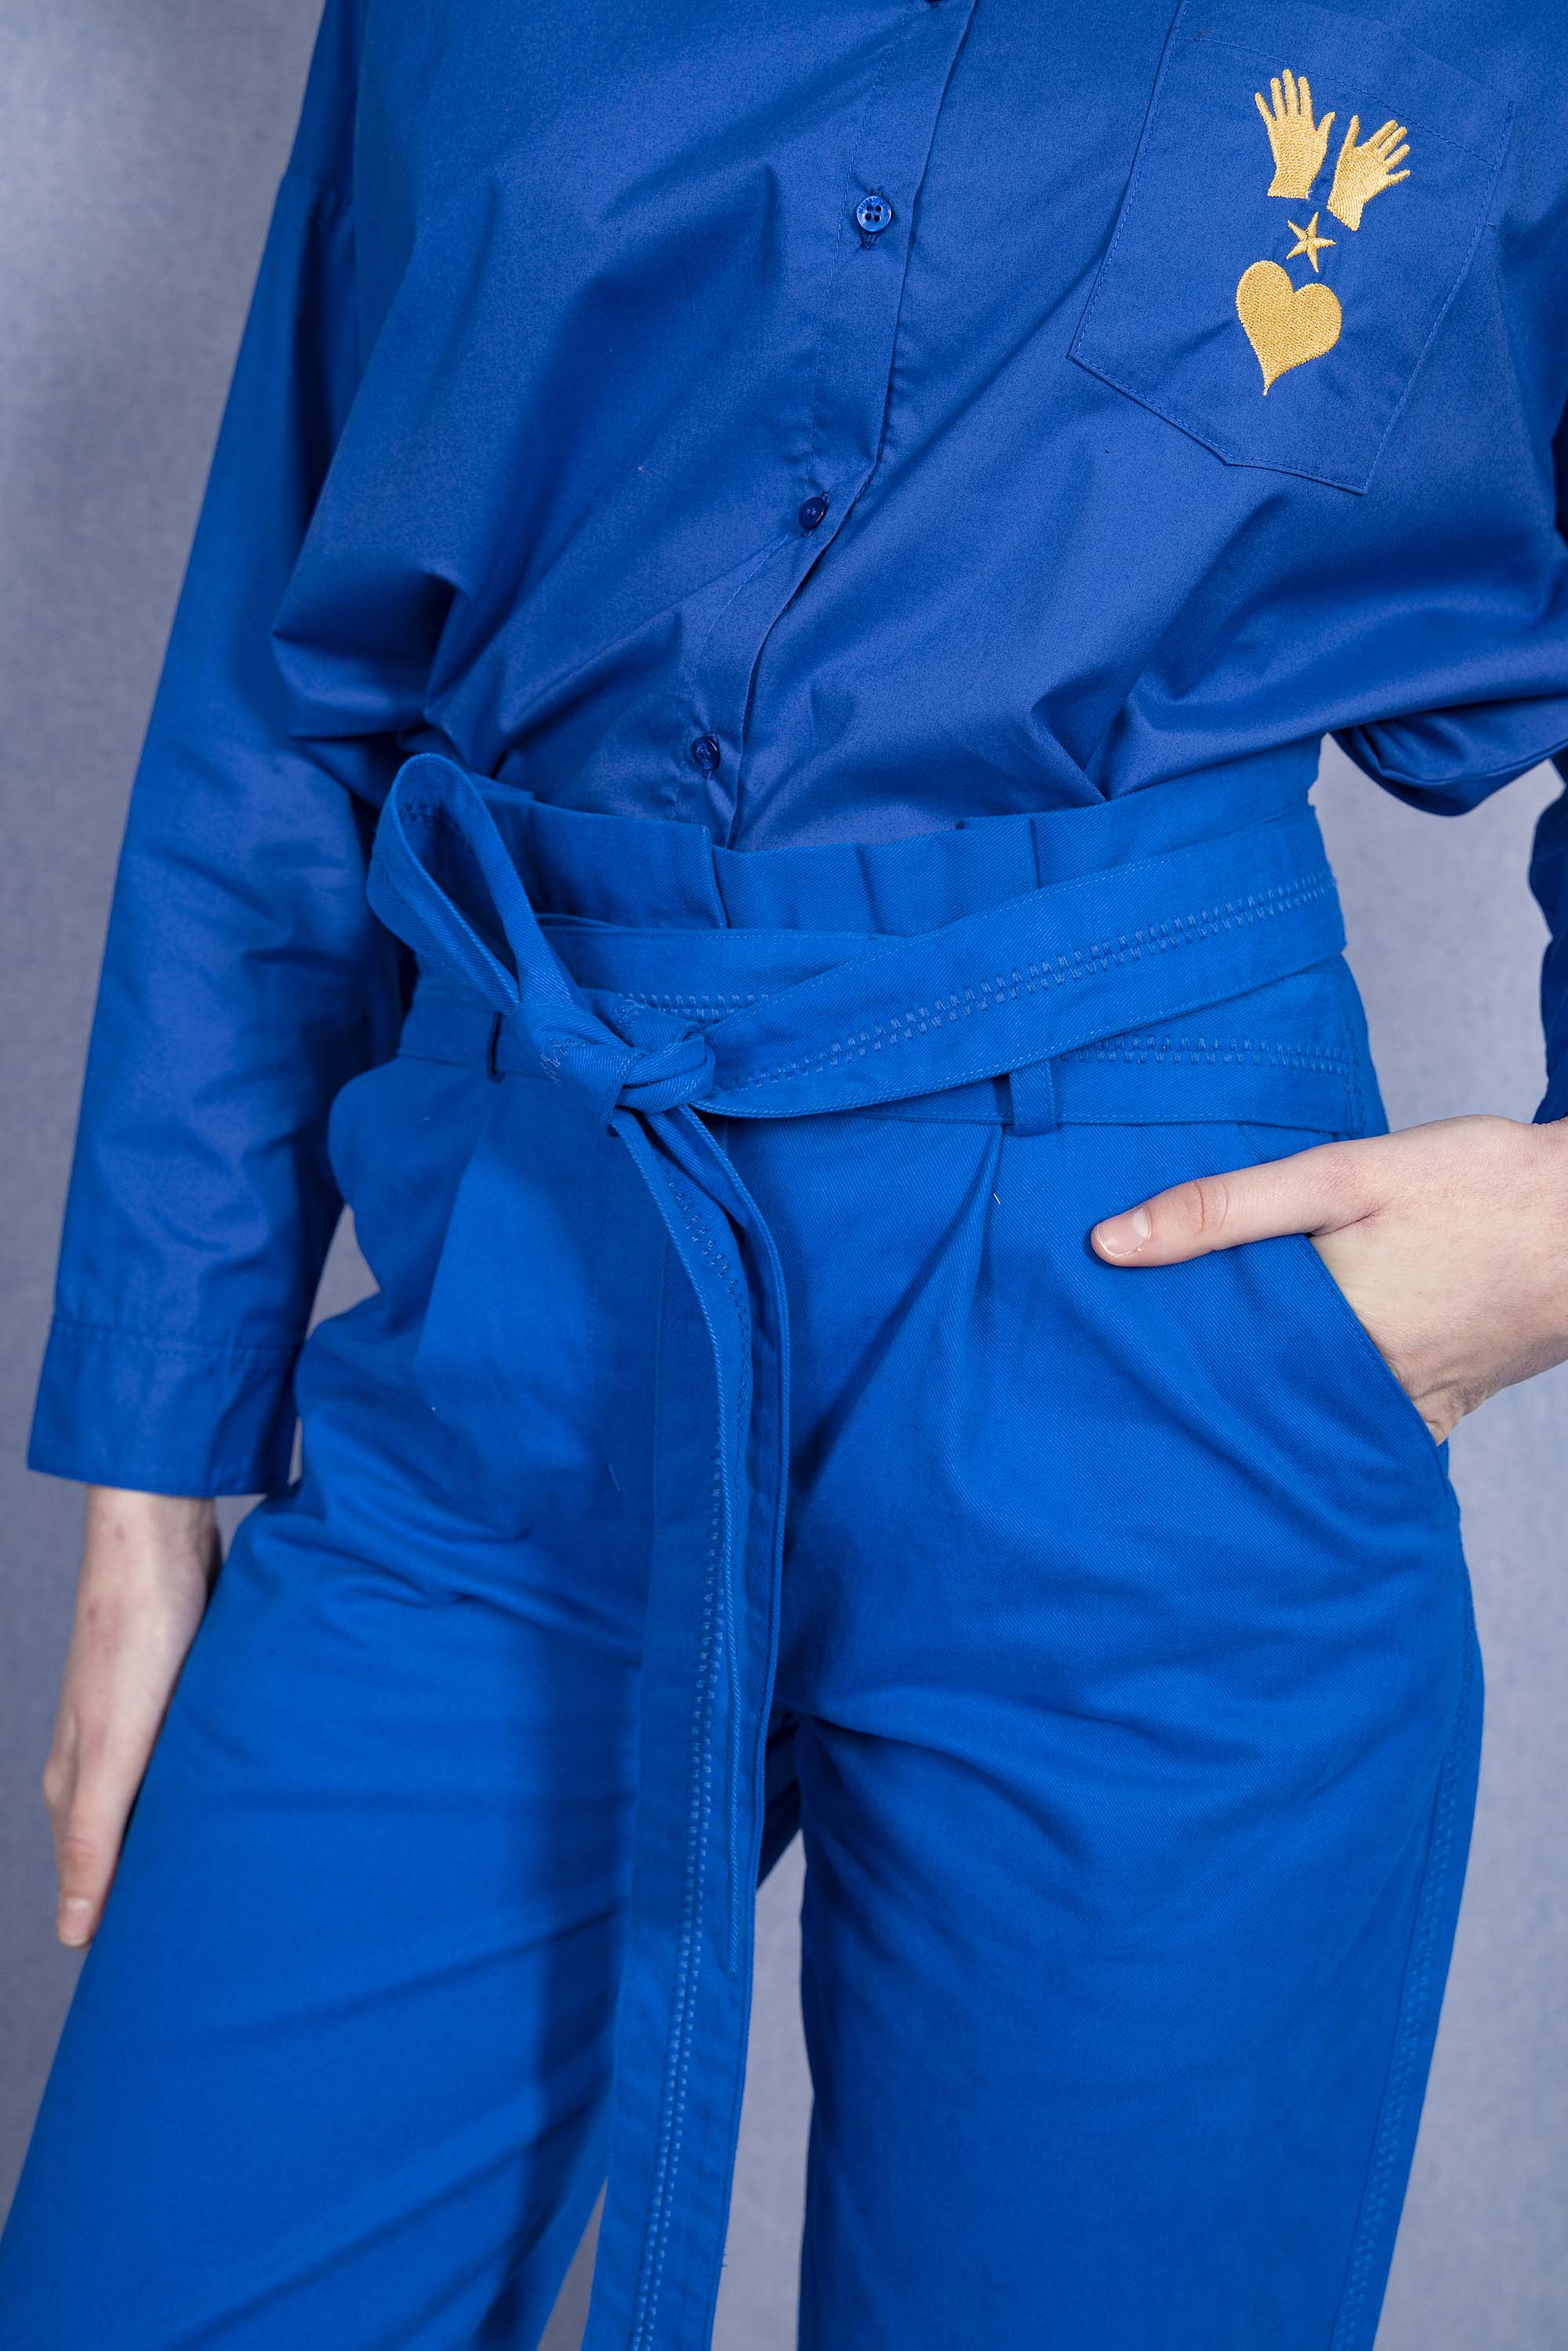 Pantalon Calipso Bleu Saphir parfaite alternative aux jeans, les pantalons en coton Misericordia sont uniques et confortables